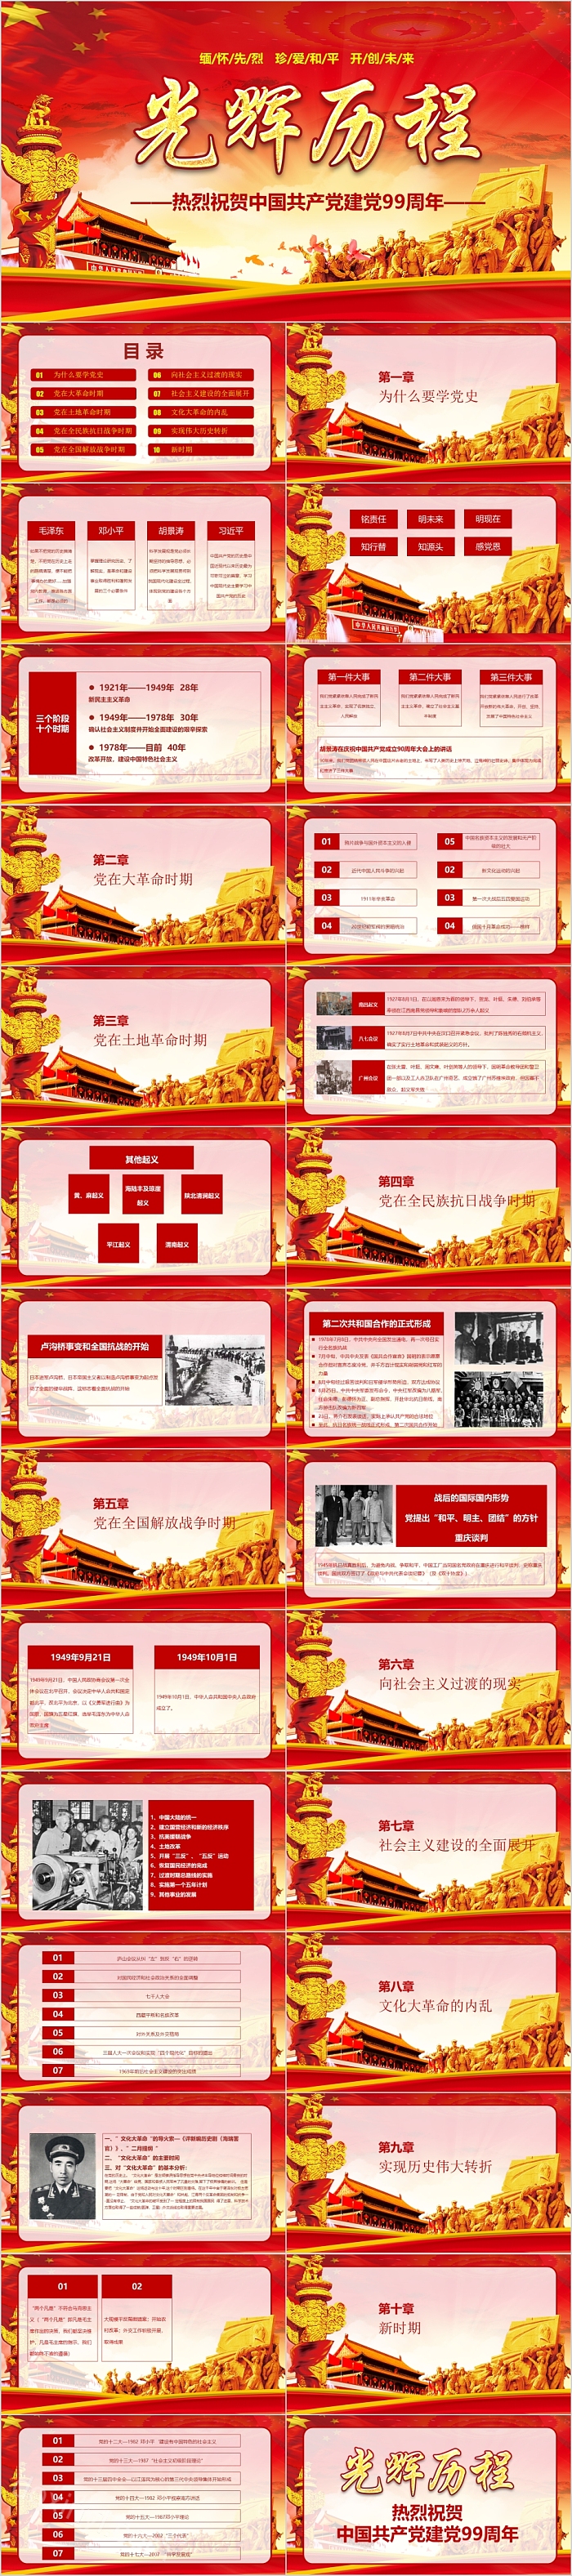 光辉历程热烈祝贺中国共产党建党99周年